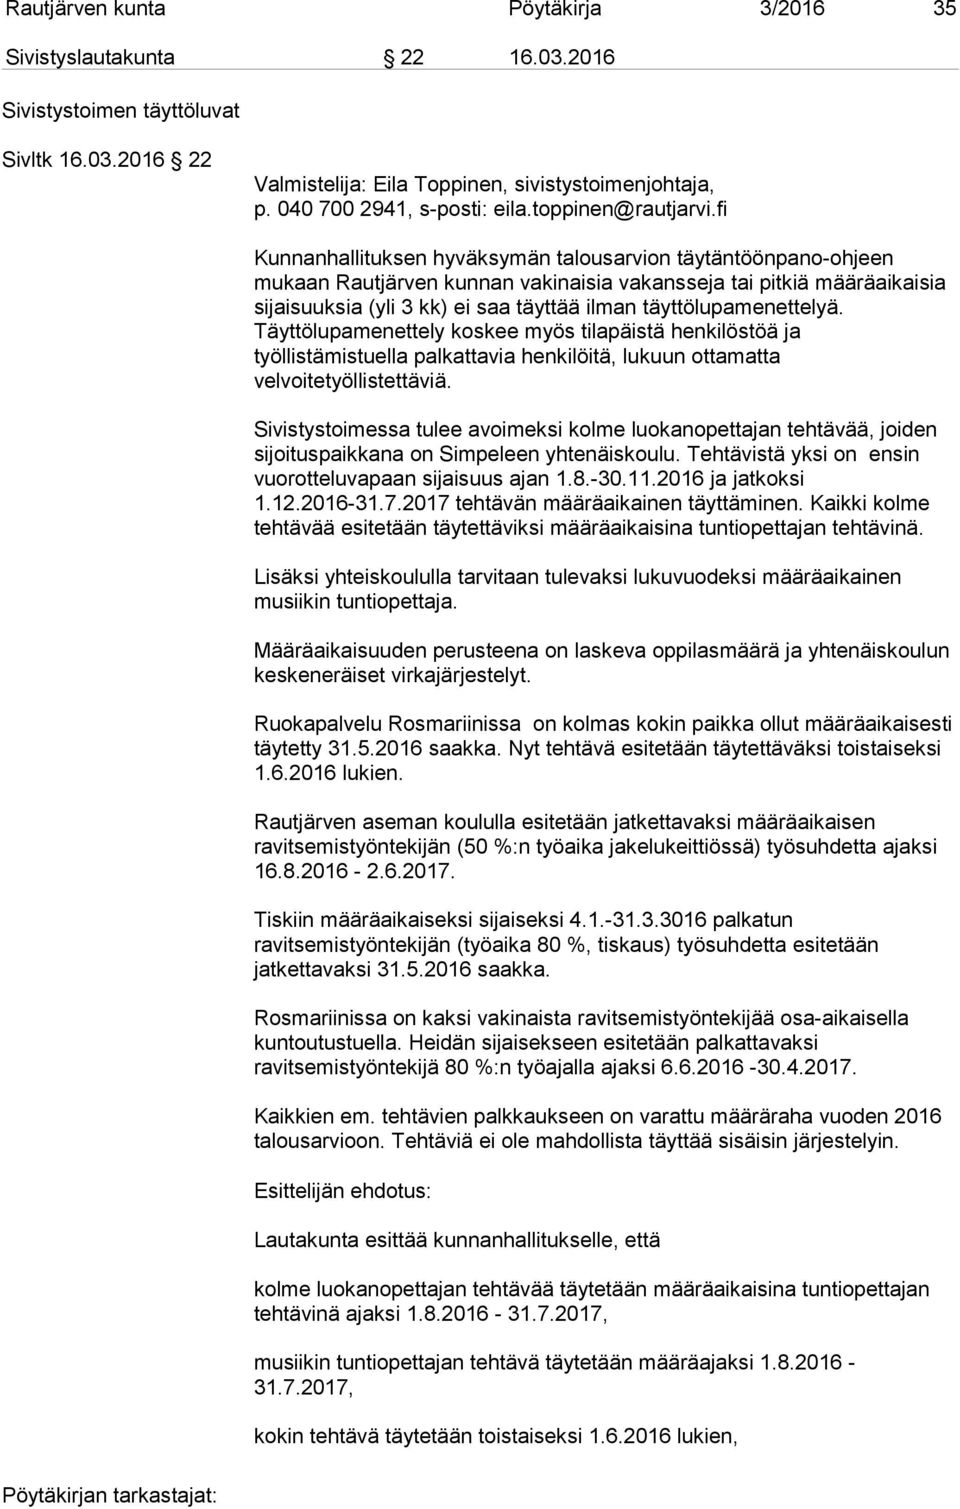 fi Kunnanhallituksen hyväksymän talousarvion täytäntöönpano-ohjeen mukaan Rautjärven kunnan vakinaisia vakansseja tai pitkiä määräaikaisia sijaisuuksia (yli 3 kk) ei saa täyttää ilman